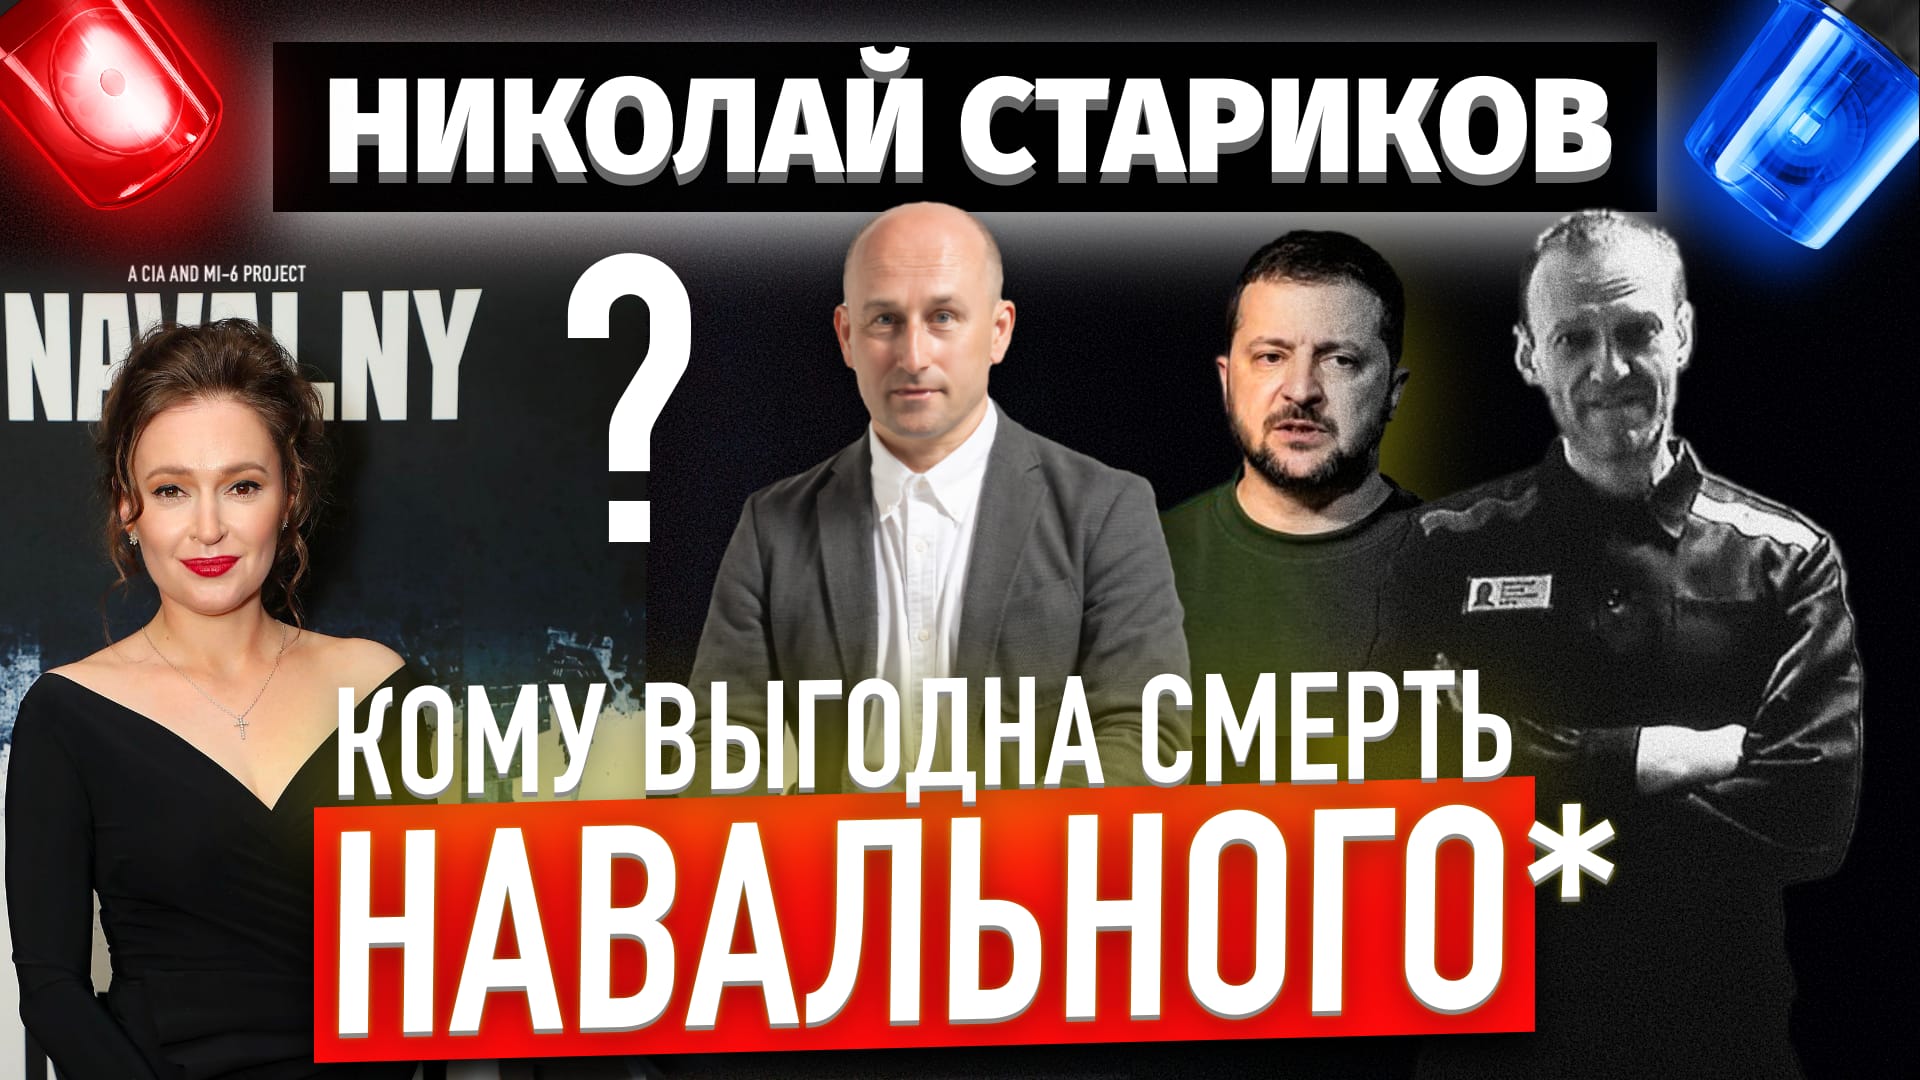 Кому выгодна смерть Навального*